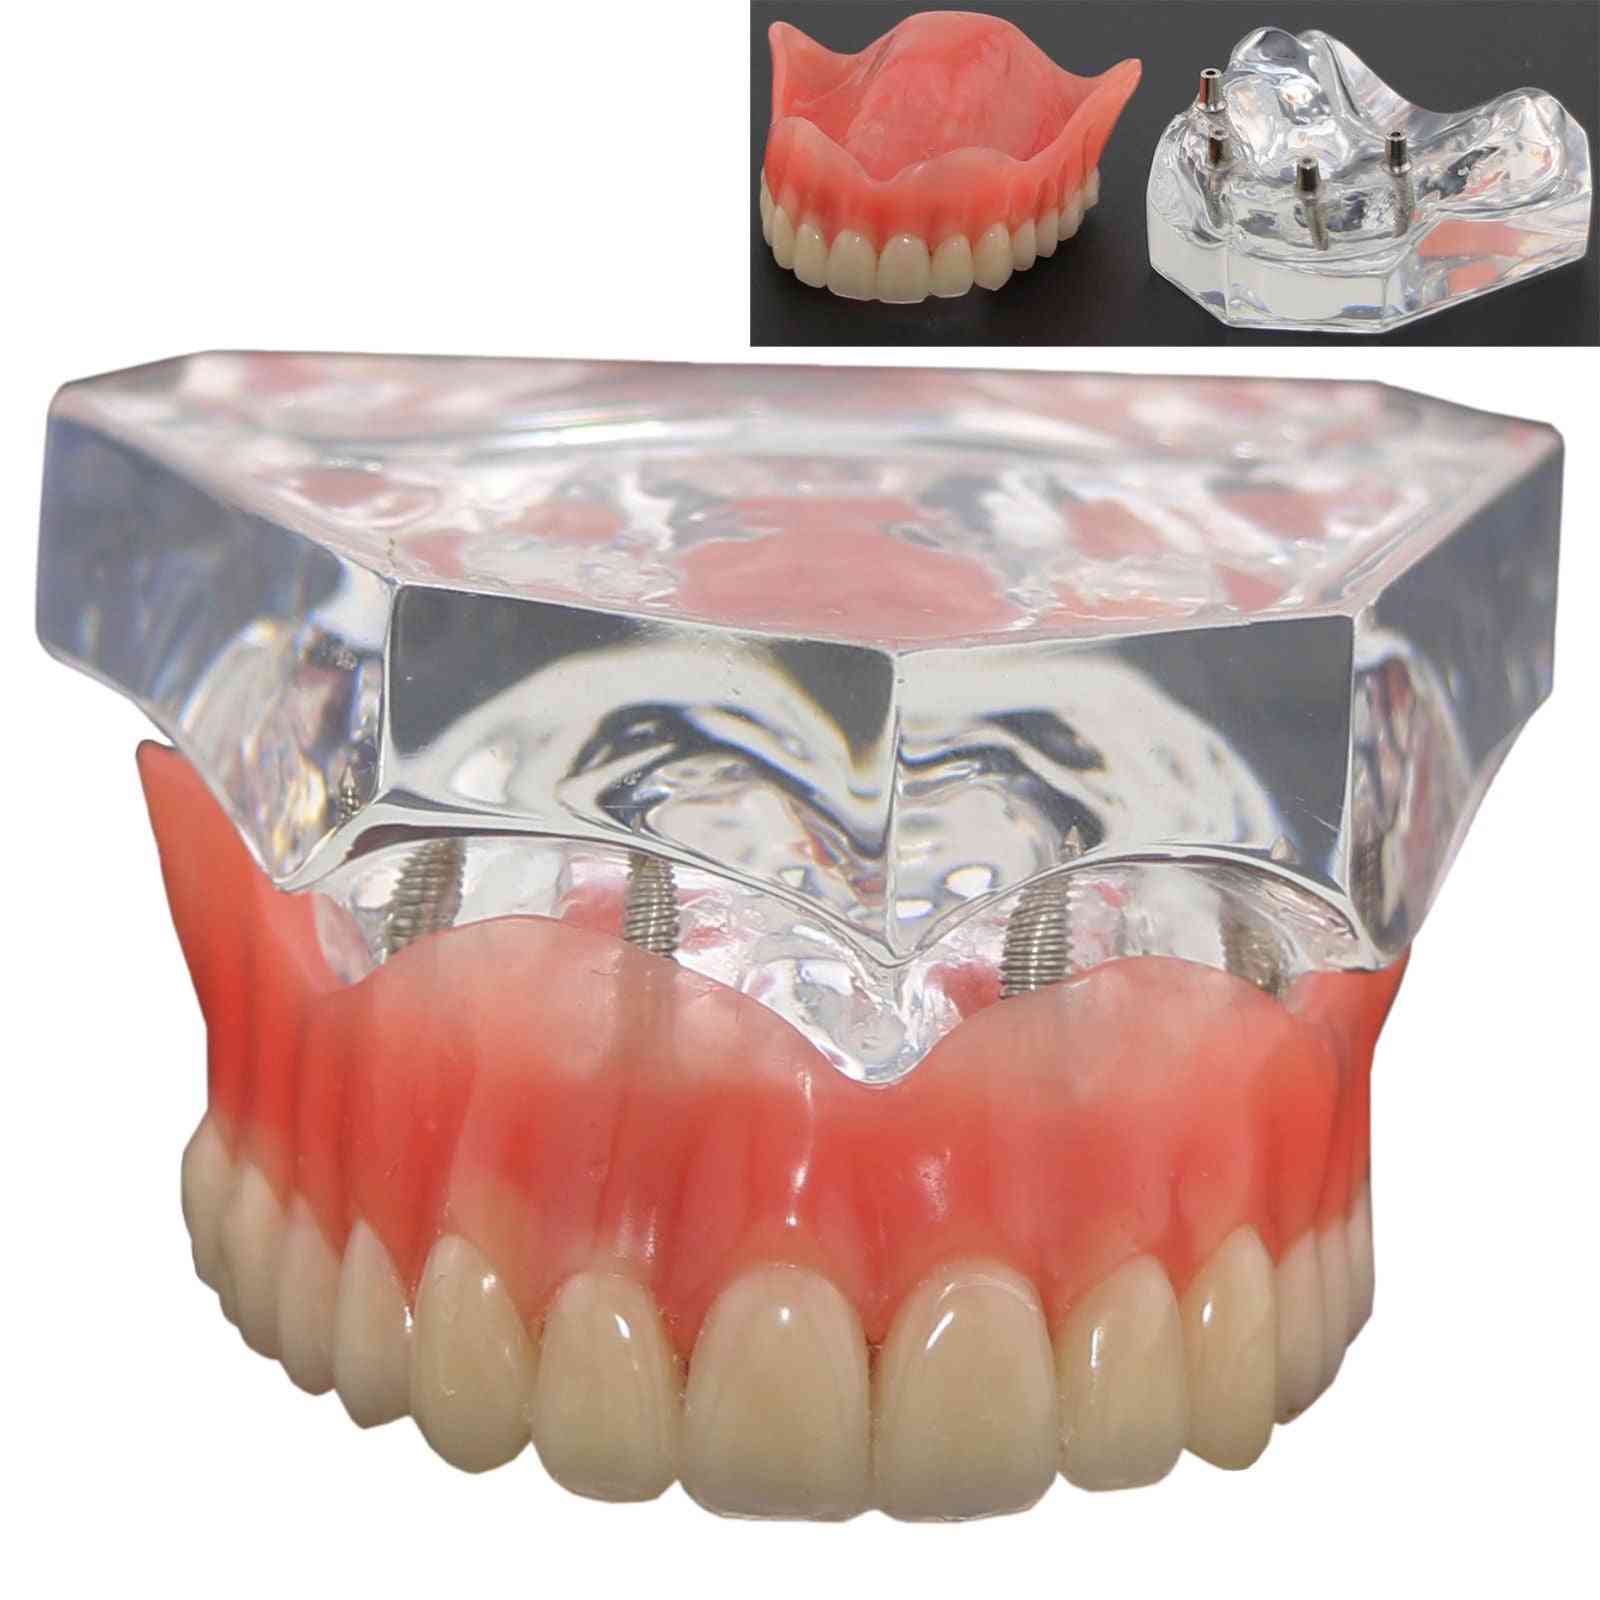 1buc superdentare superioară dentară superioară 4 implanturi model demo, model dinți